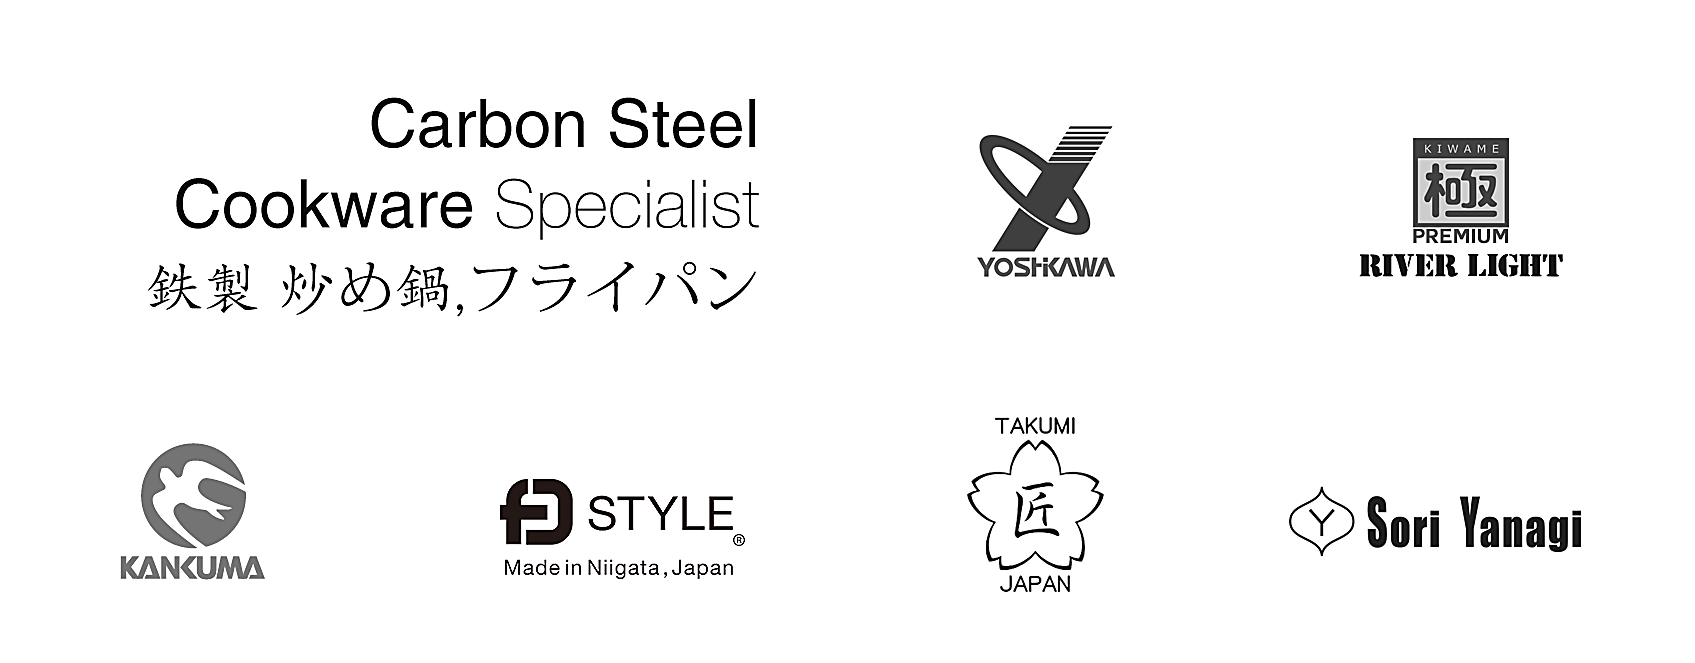 Japanese brands of carbon steel woks